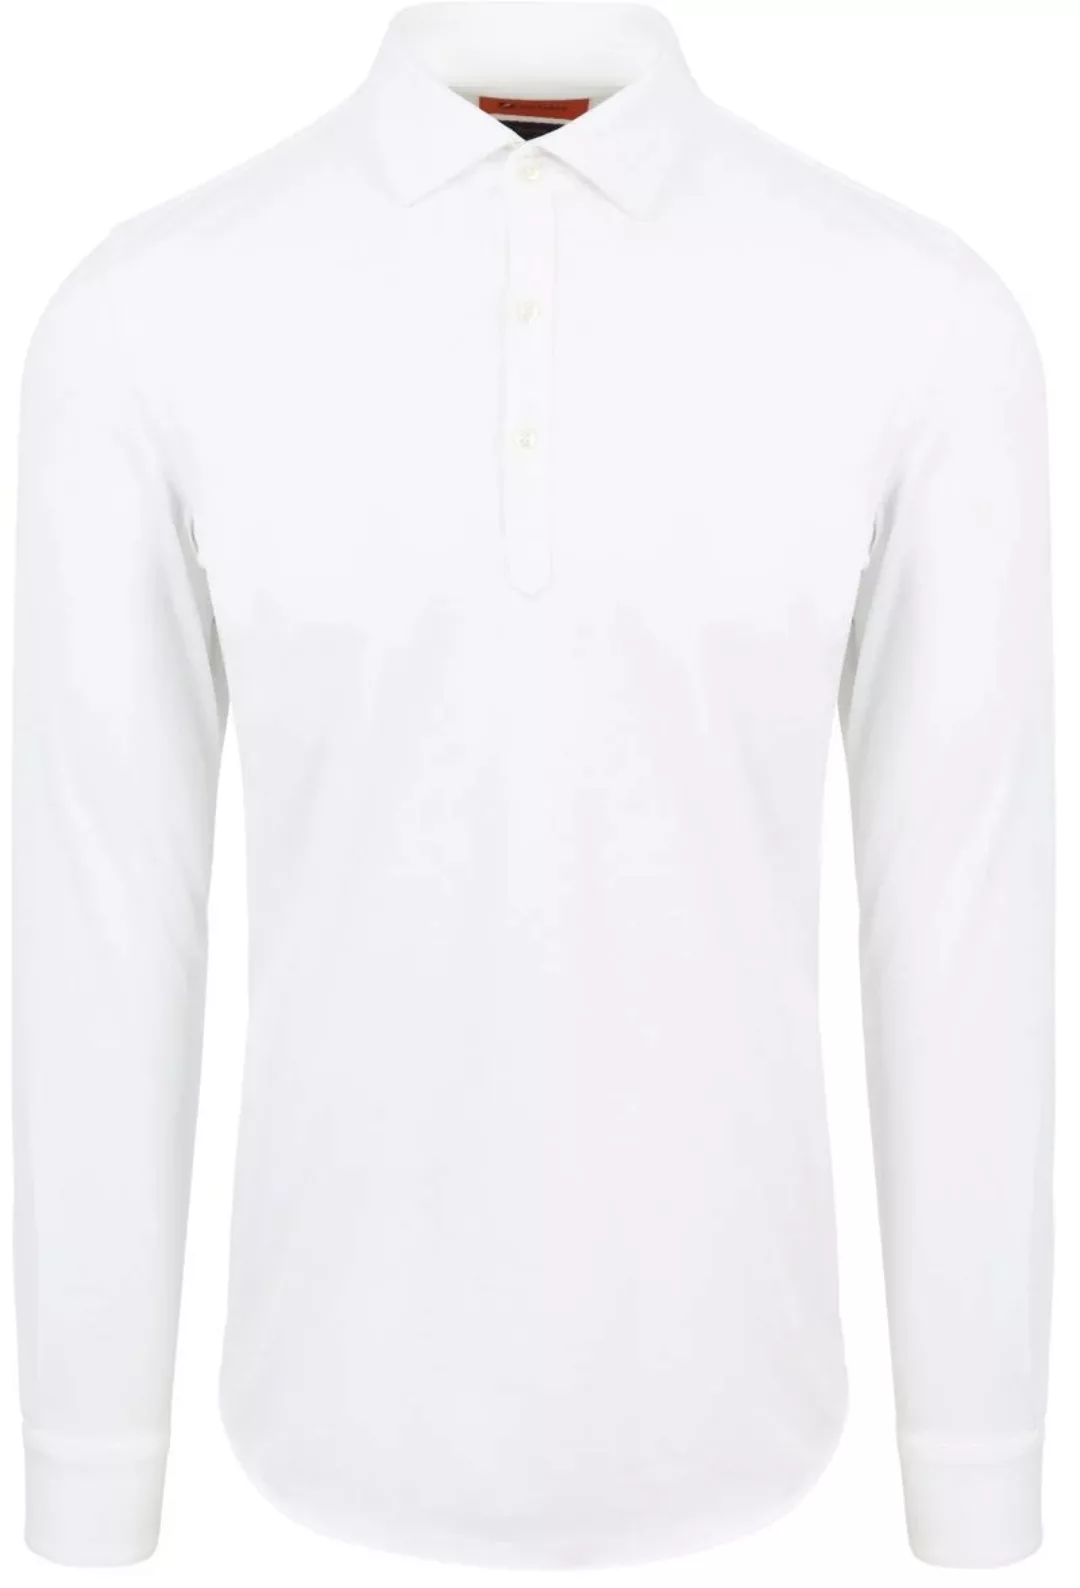 Suitable Camicia Poloshirt Weiß - Größe S günstig online kaufen